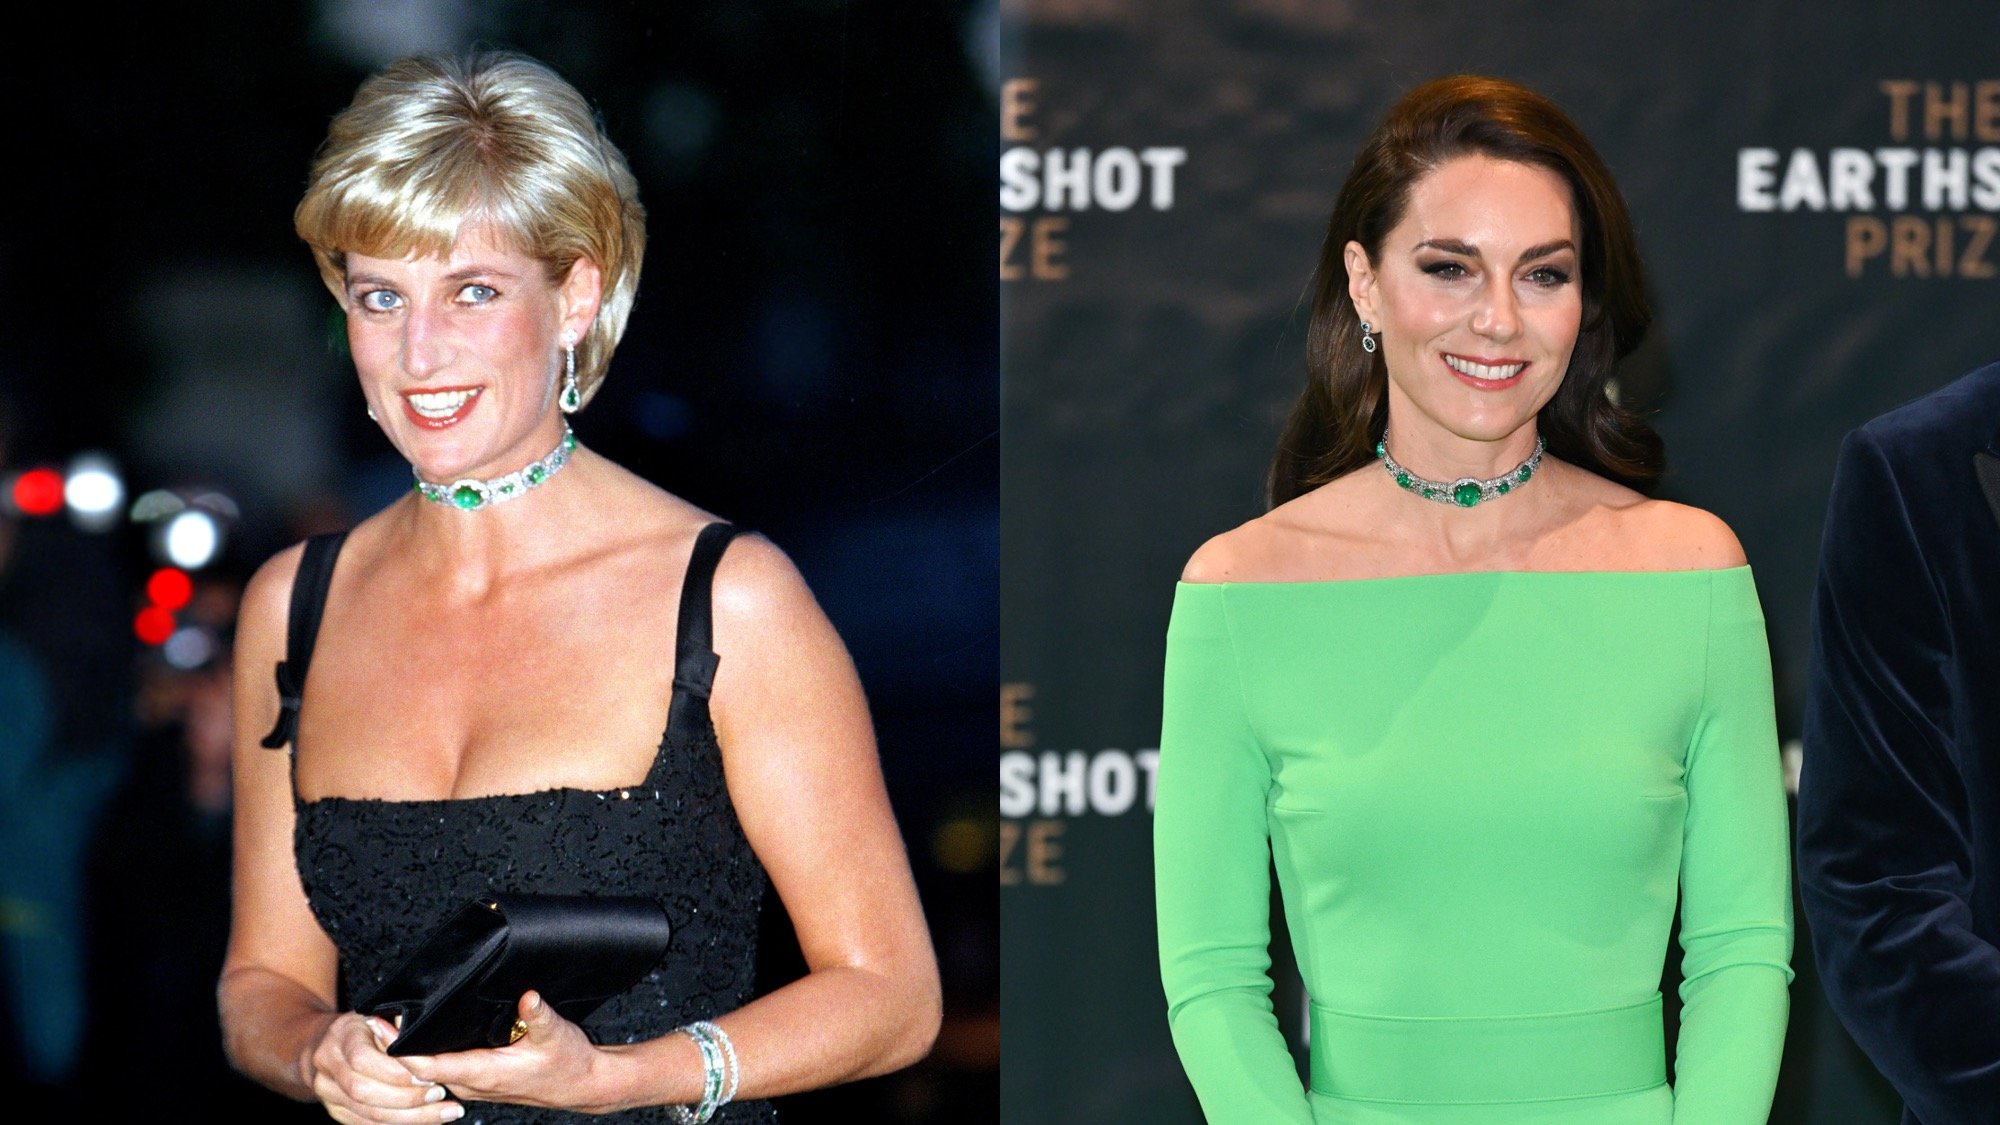 Un expert en langage corporel explique les "parallèles" entre Kate Middleton et la princesse Diana